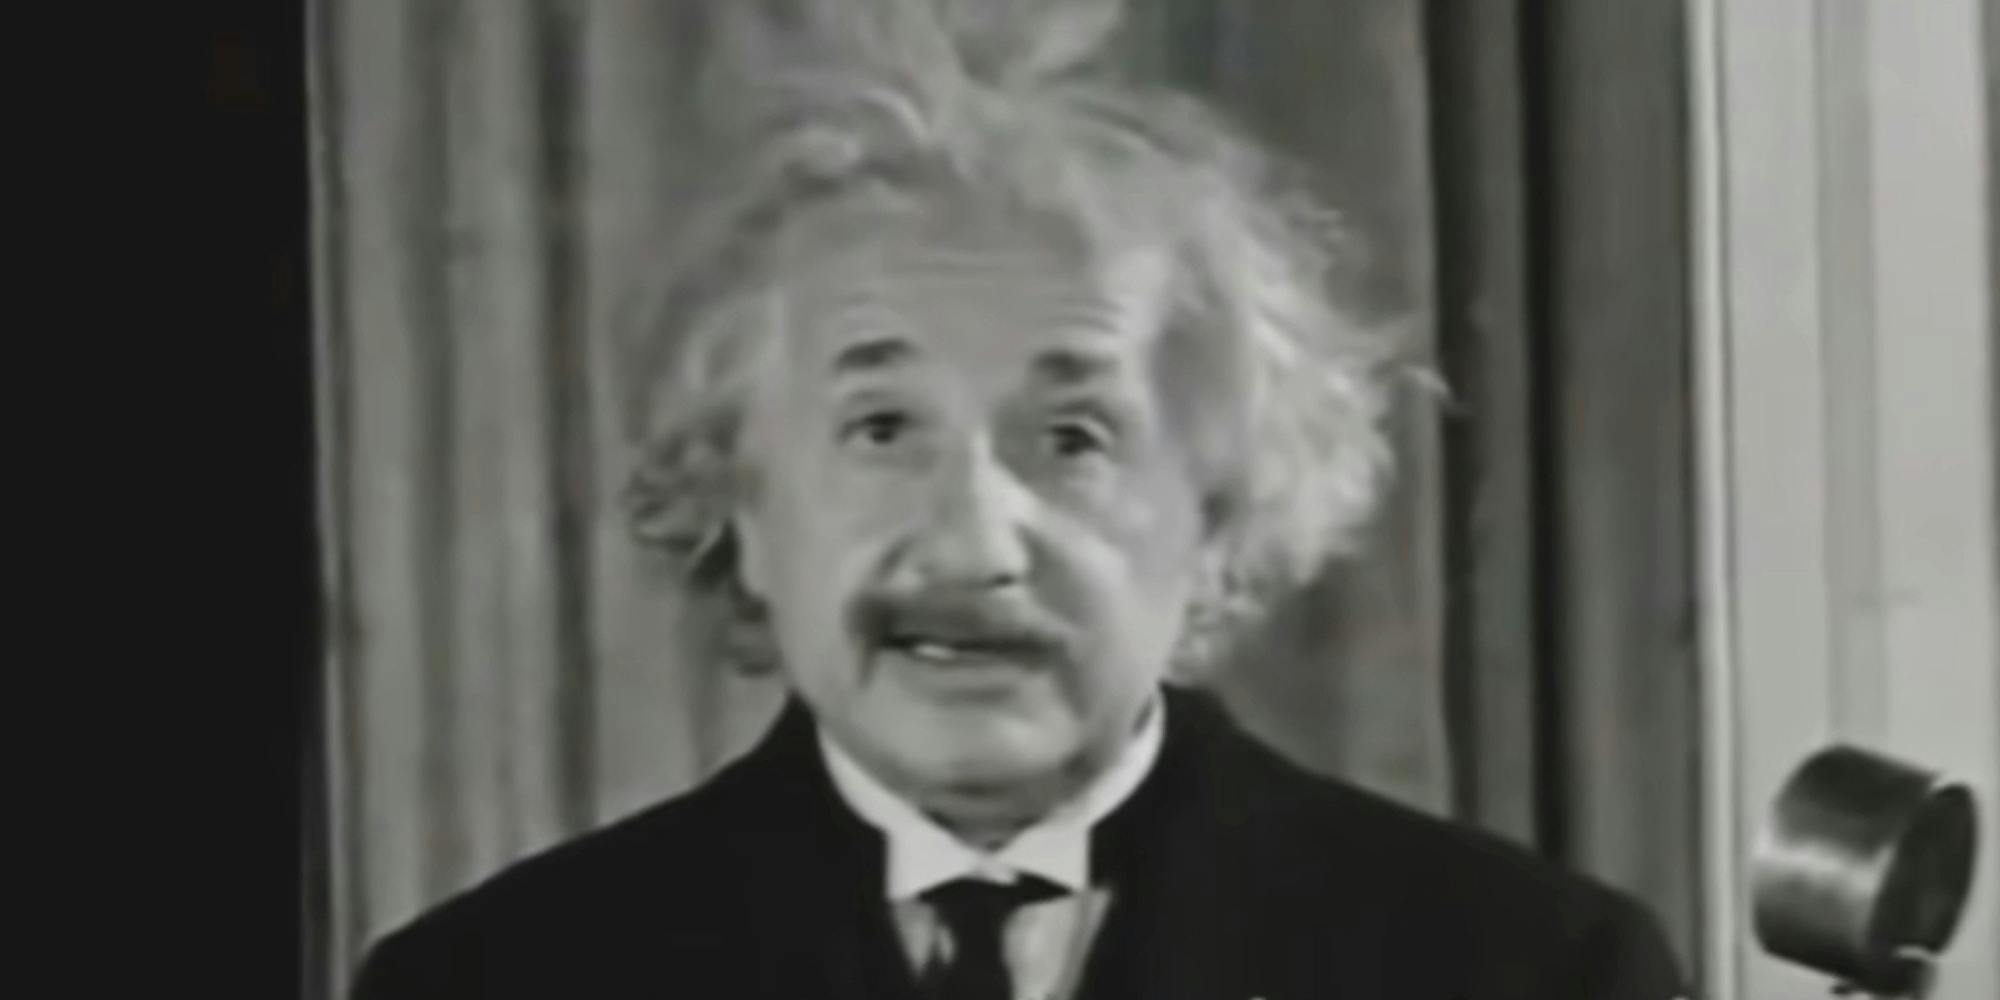 Albert Einstein speaking